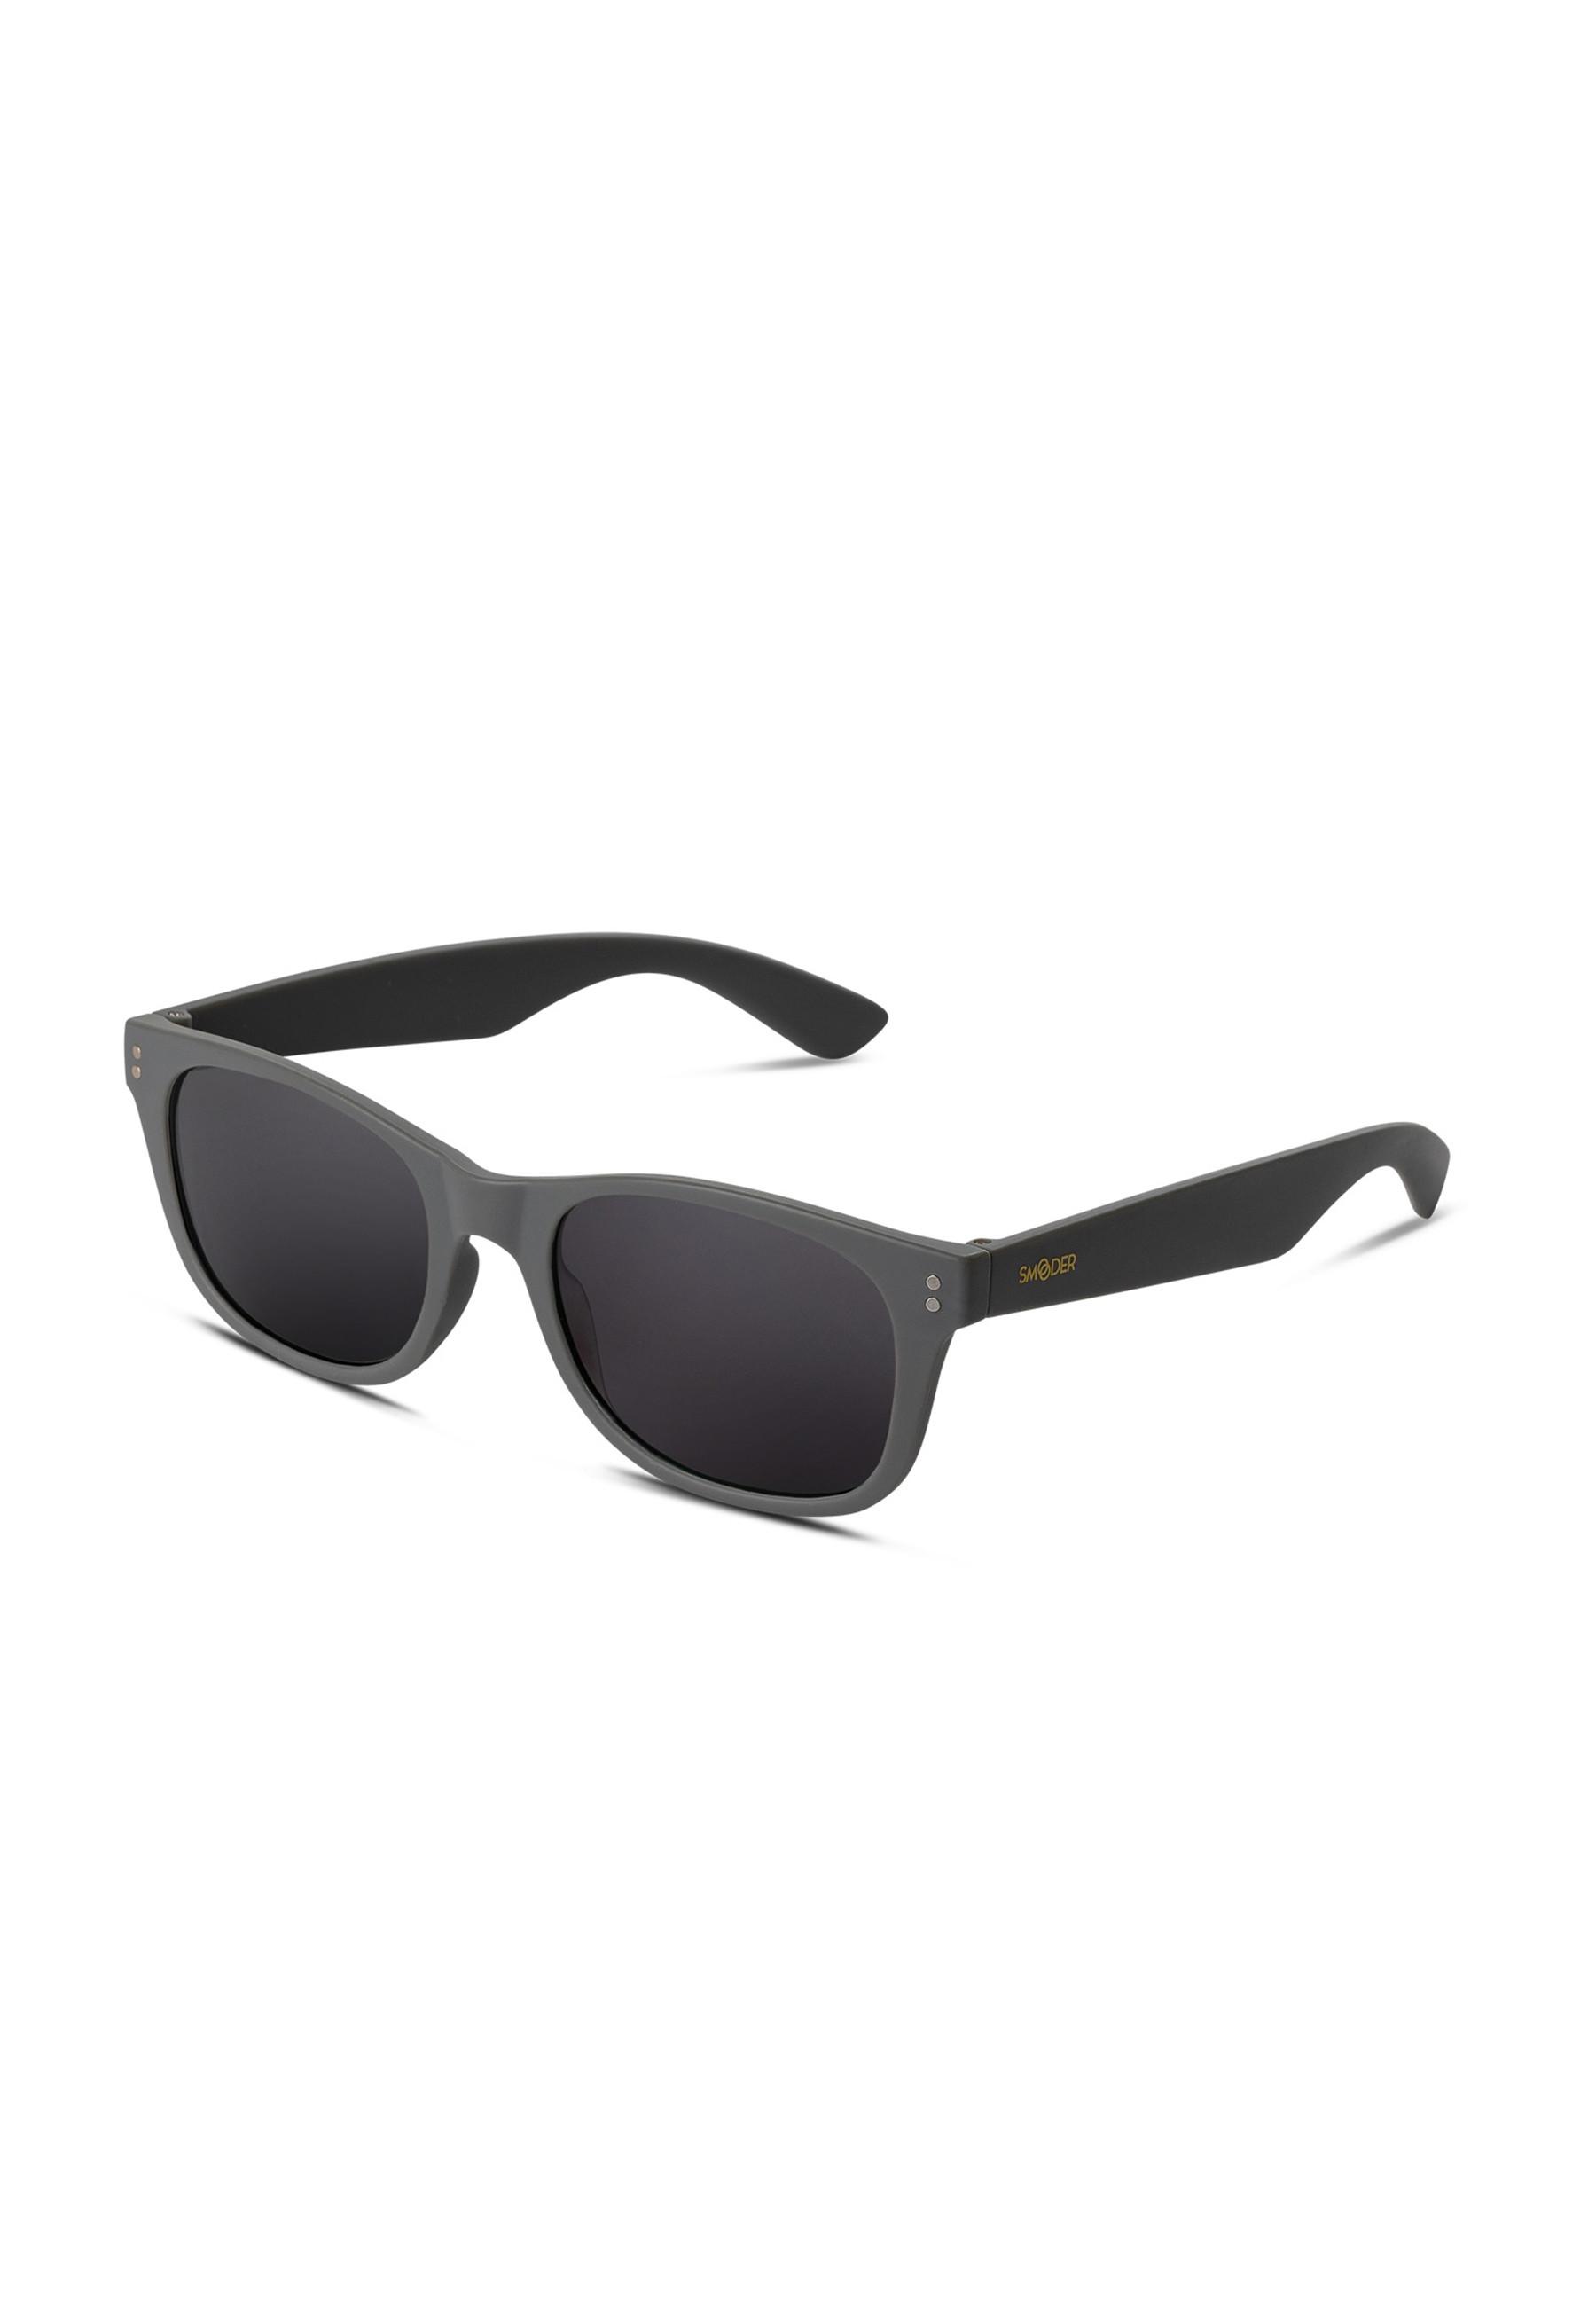 Smooder  Sonnenbrille mit 100% UV-Schutz 